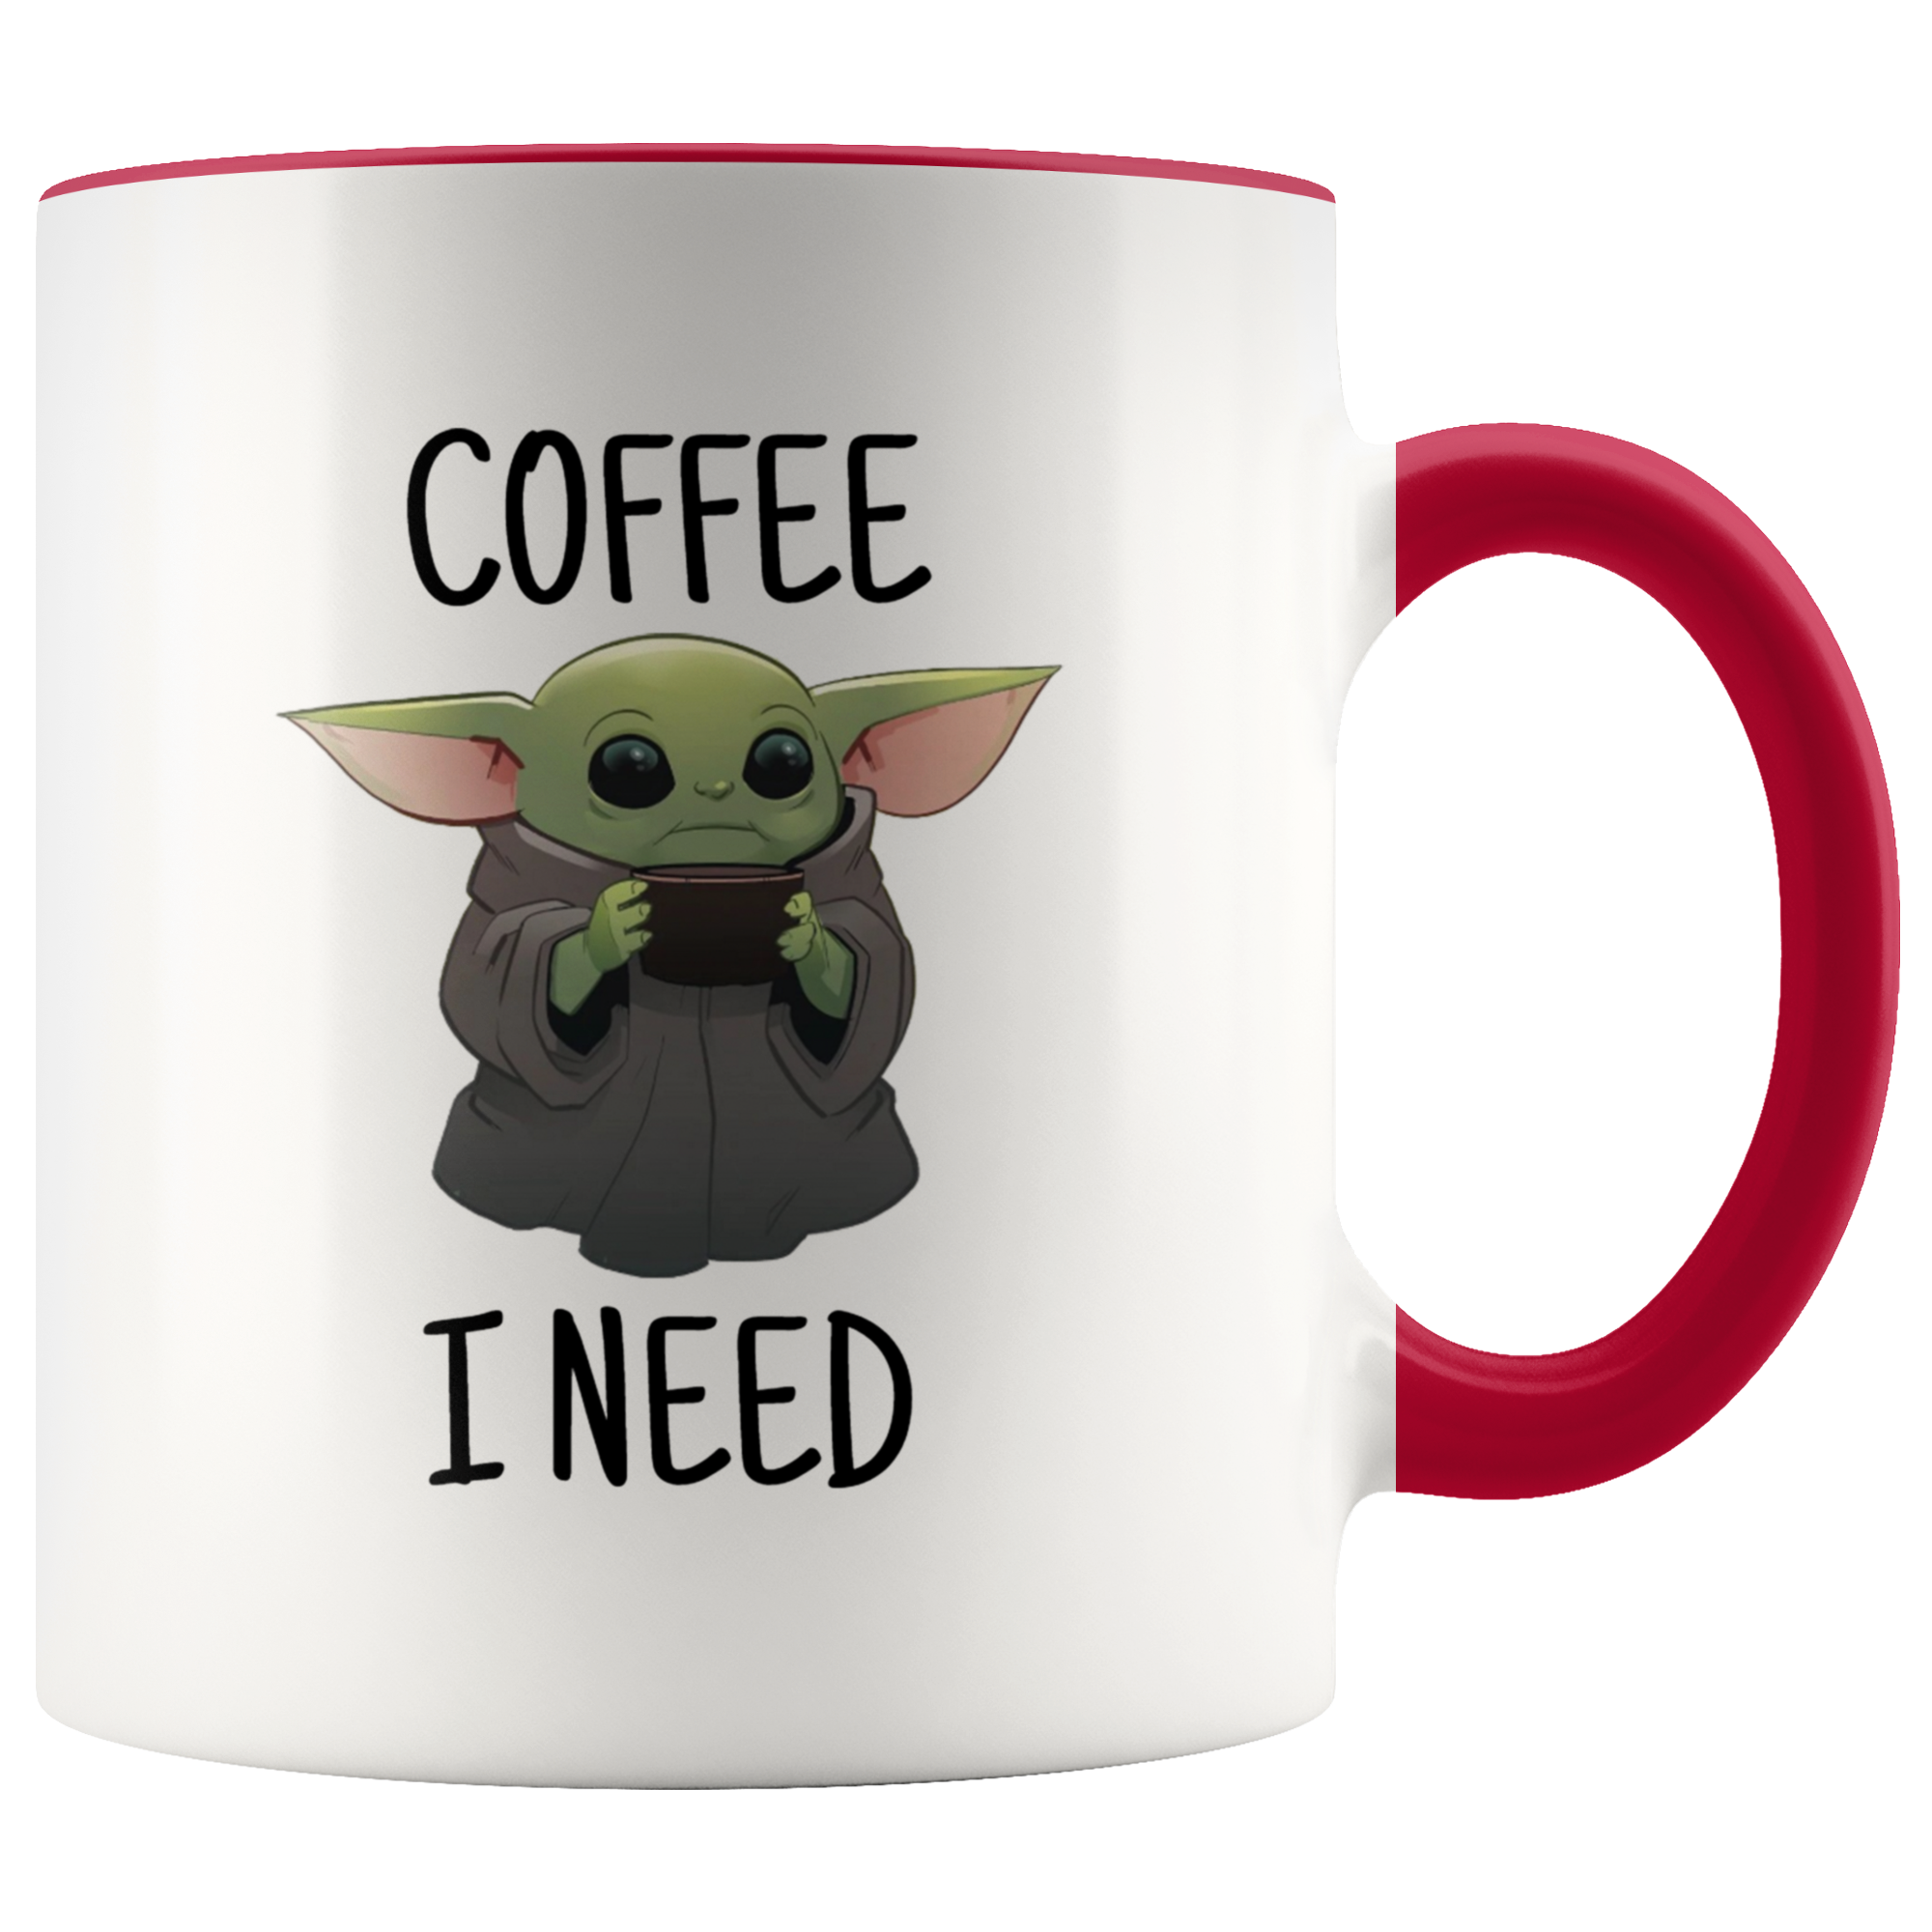 Coffee I Need Baby Yoda Mug